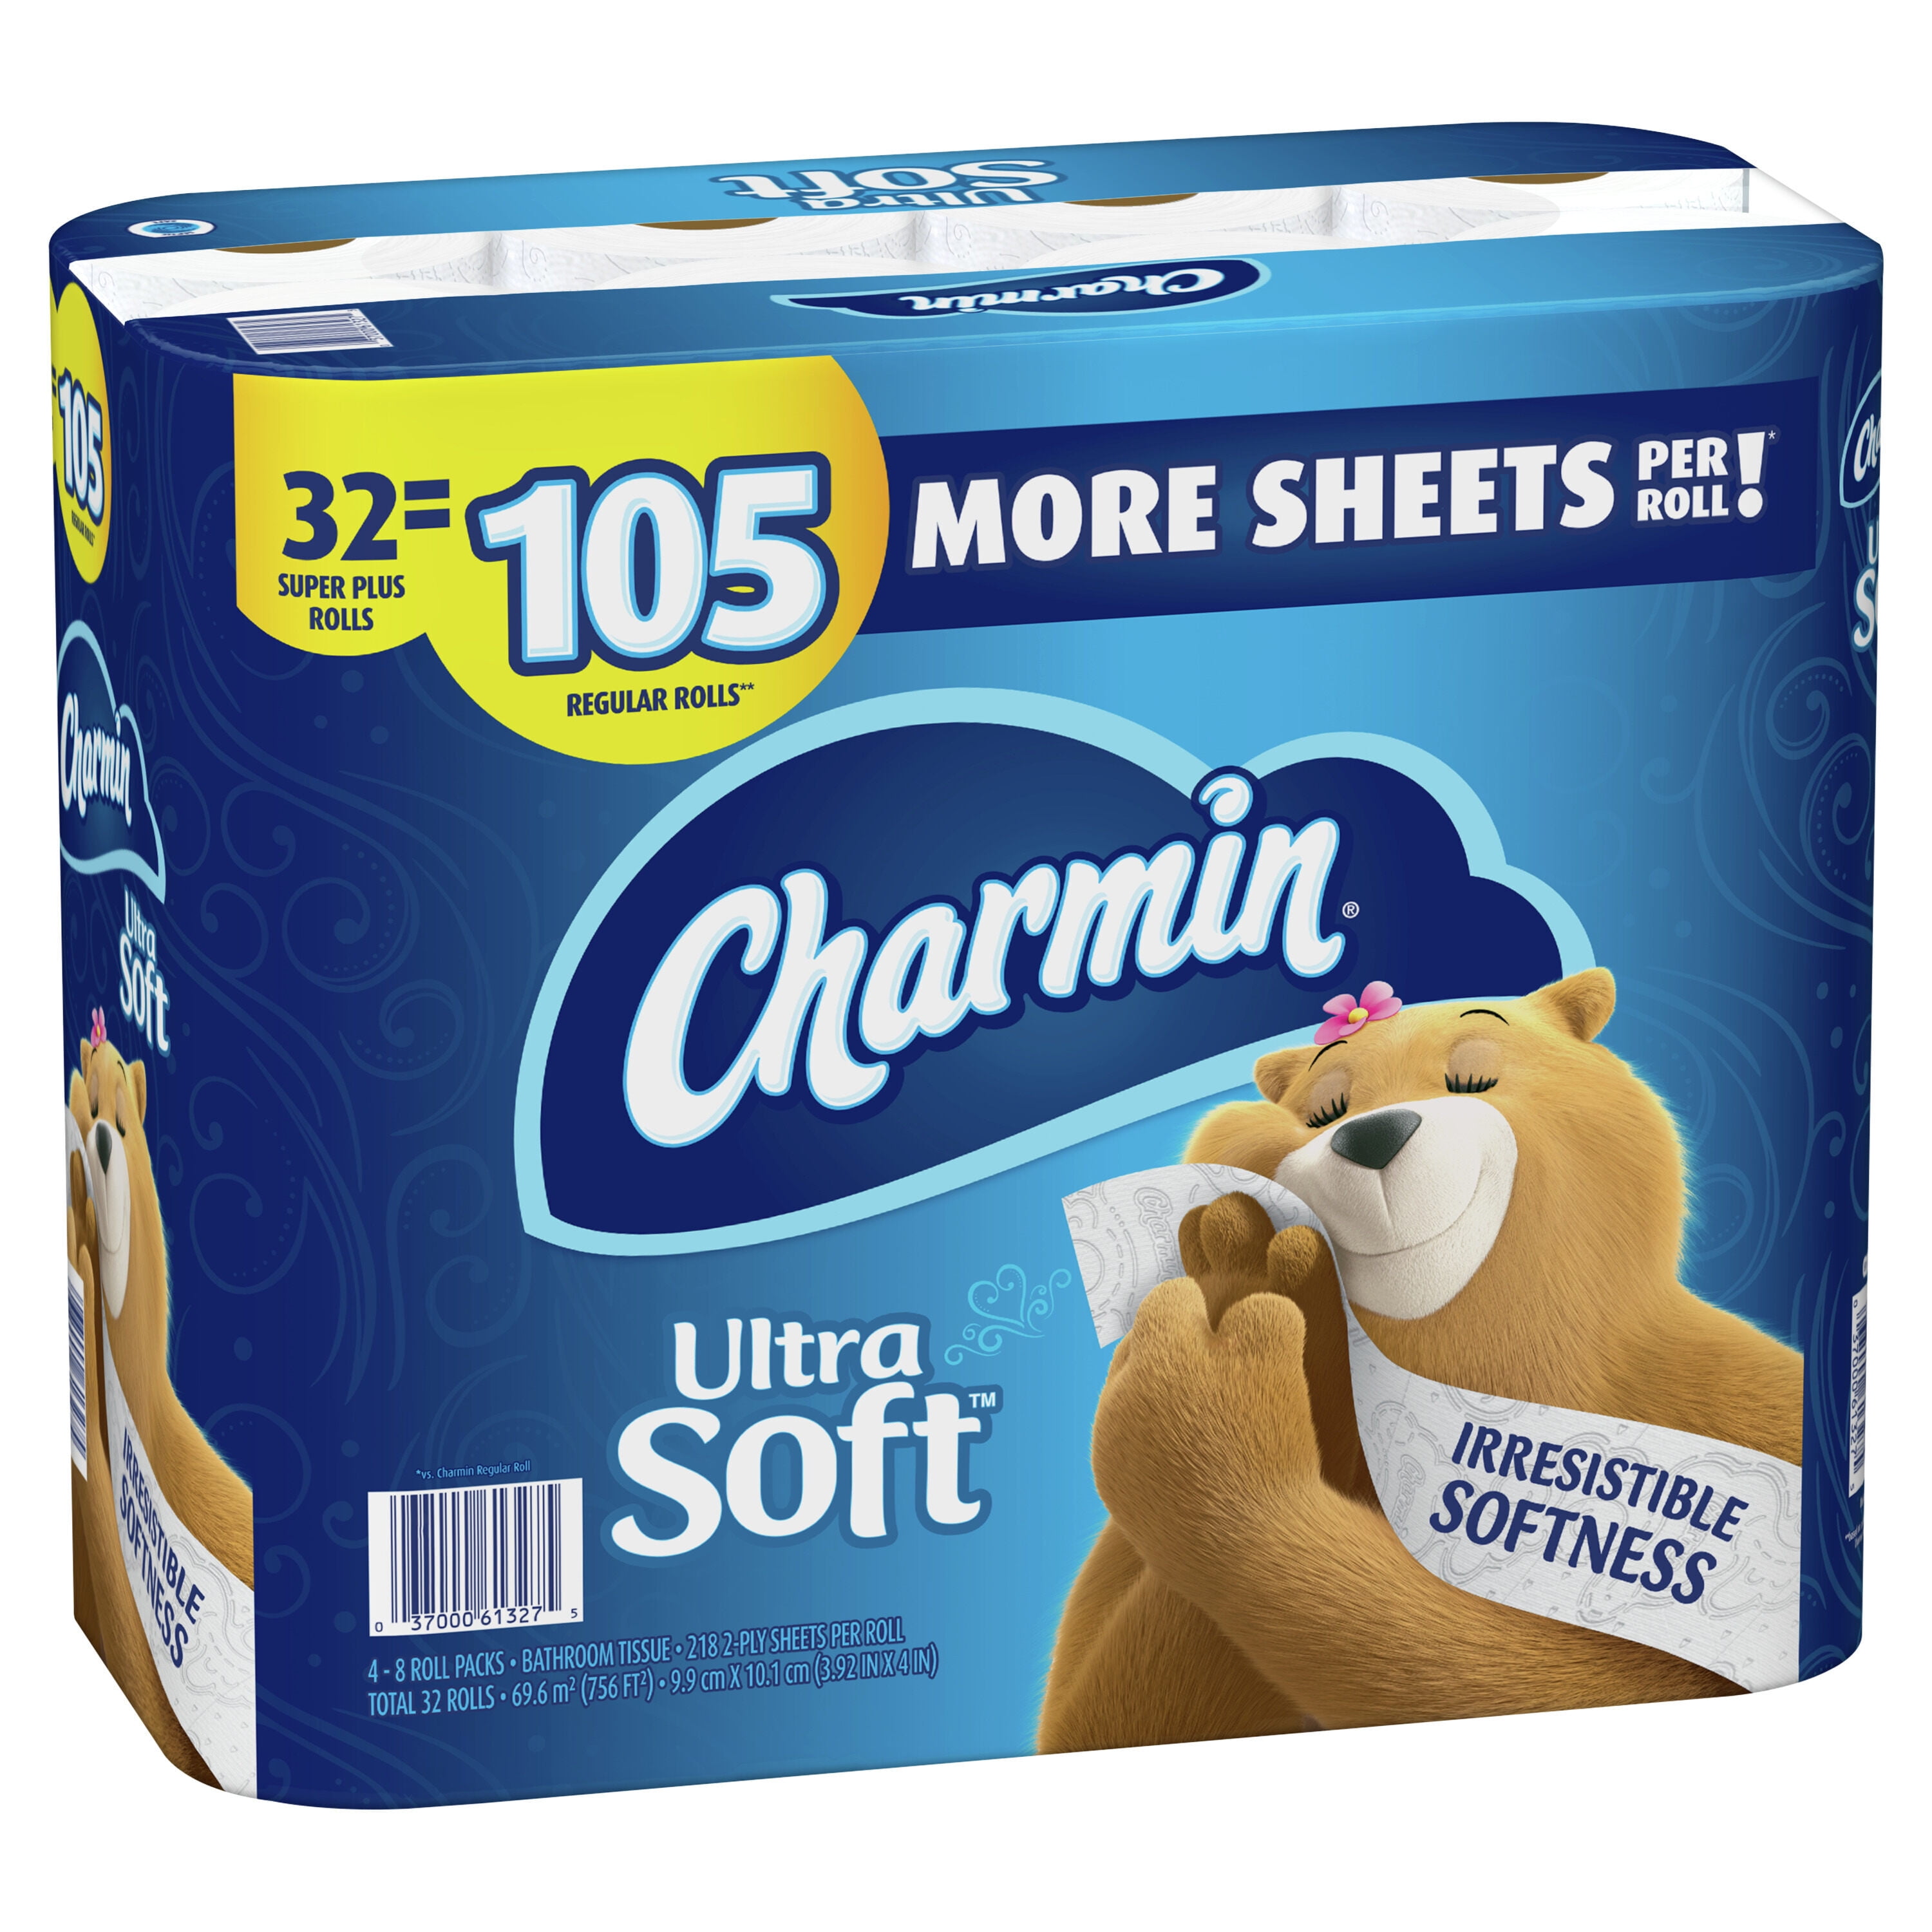 Charmin Ultra Soft Toilet Paper 32 Super Plus Roll, 218 Sheets Per Roll -  Walmart.com